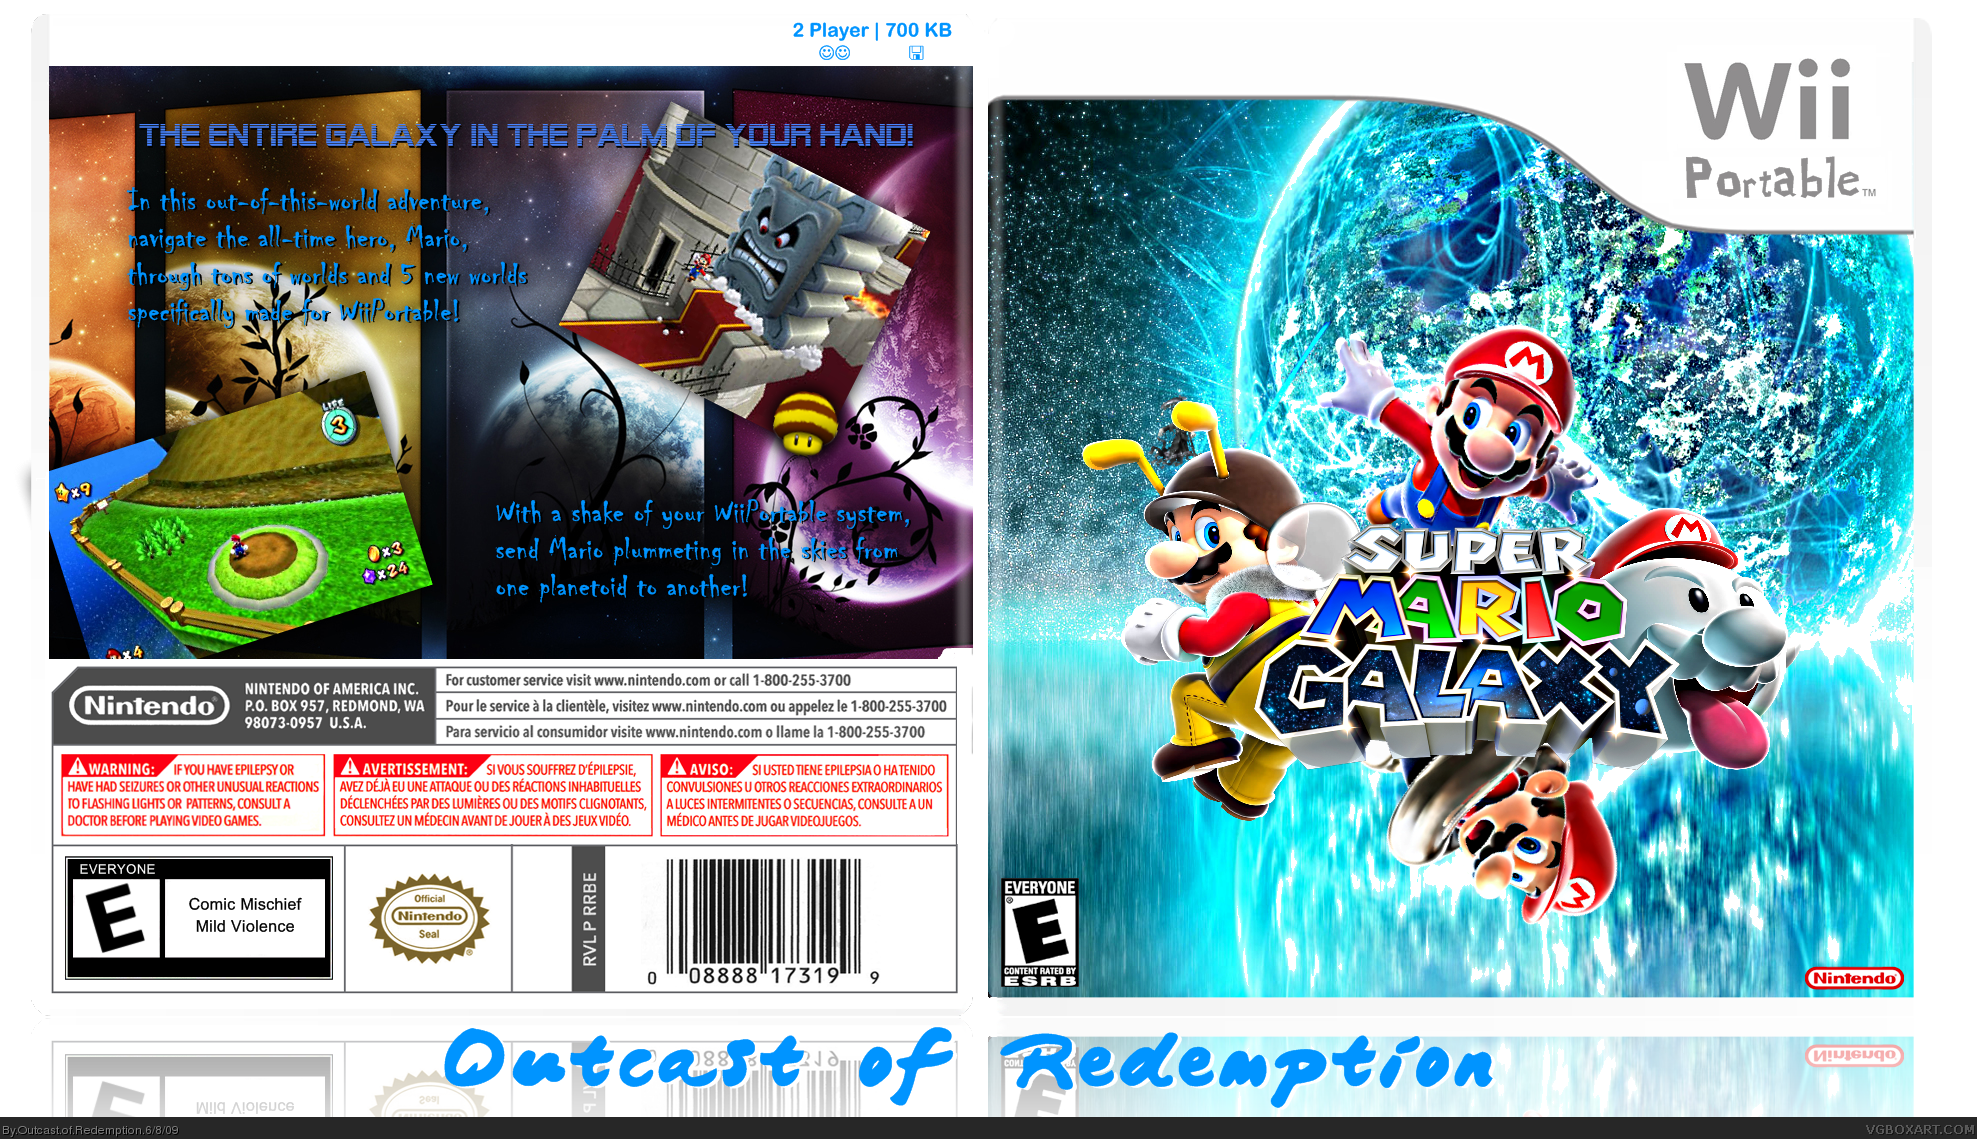 Super Mario Galaxy (WiiPortable) box cover